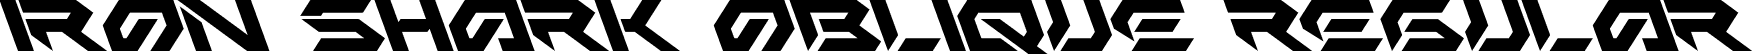 Iron Shark Oblique Regular font - Iron Shark Oblique.ttf